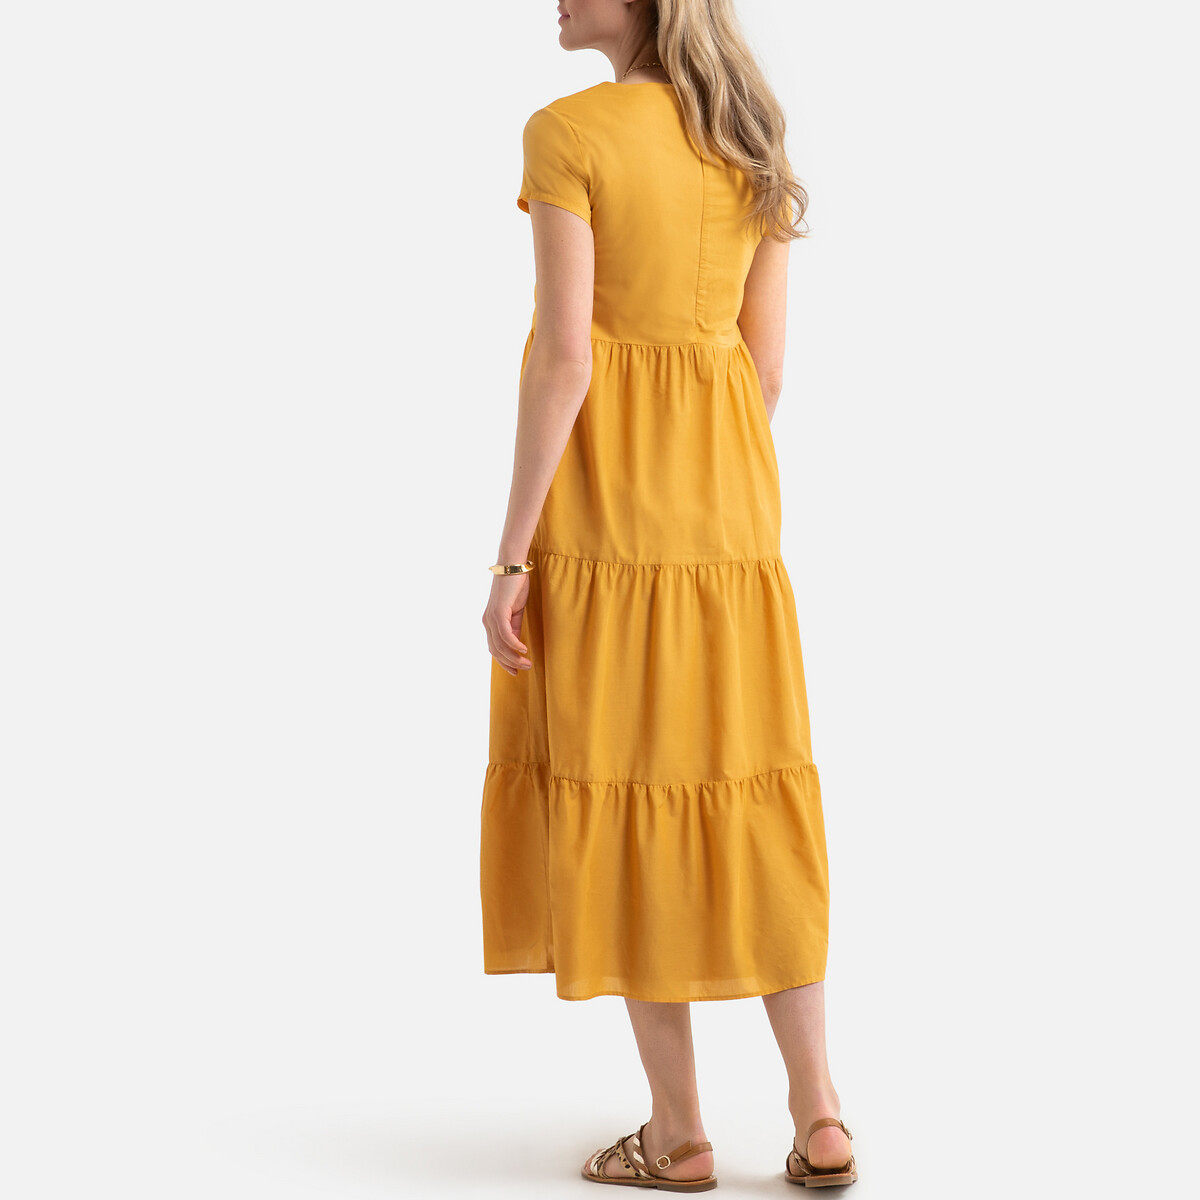 Платье LaRedoute Длинное расклешенное с короткими рукавами 36 (FR) - 42 (RUS) желтый, размер 36 (FR) - 42 (RUS) Длинное расклешенное с короткими рукавами 36 (FR) - 42 (RUS) желтый - фото 4